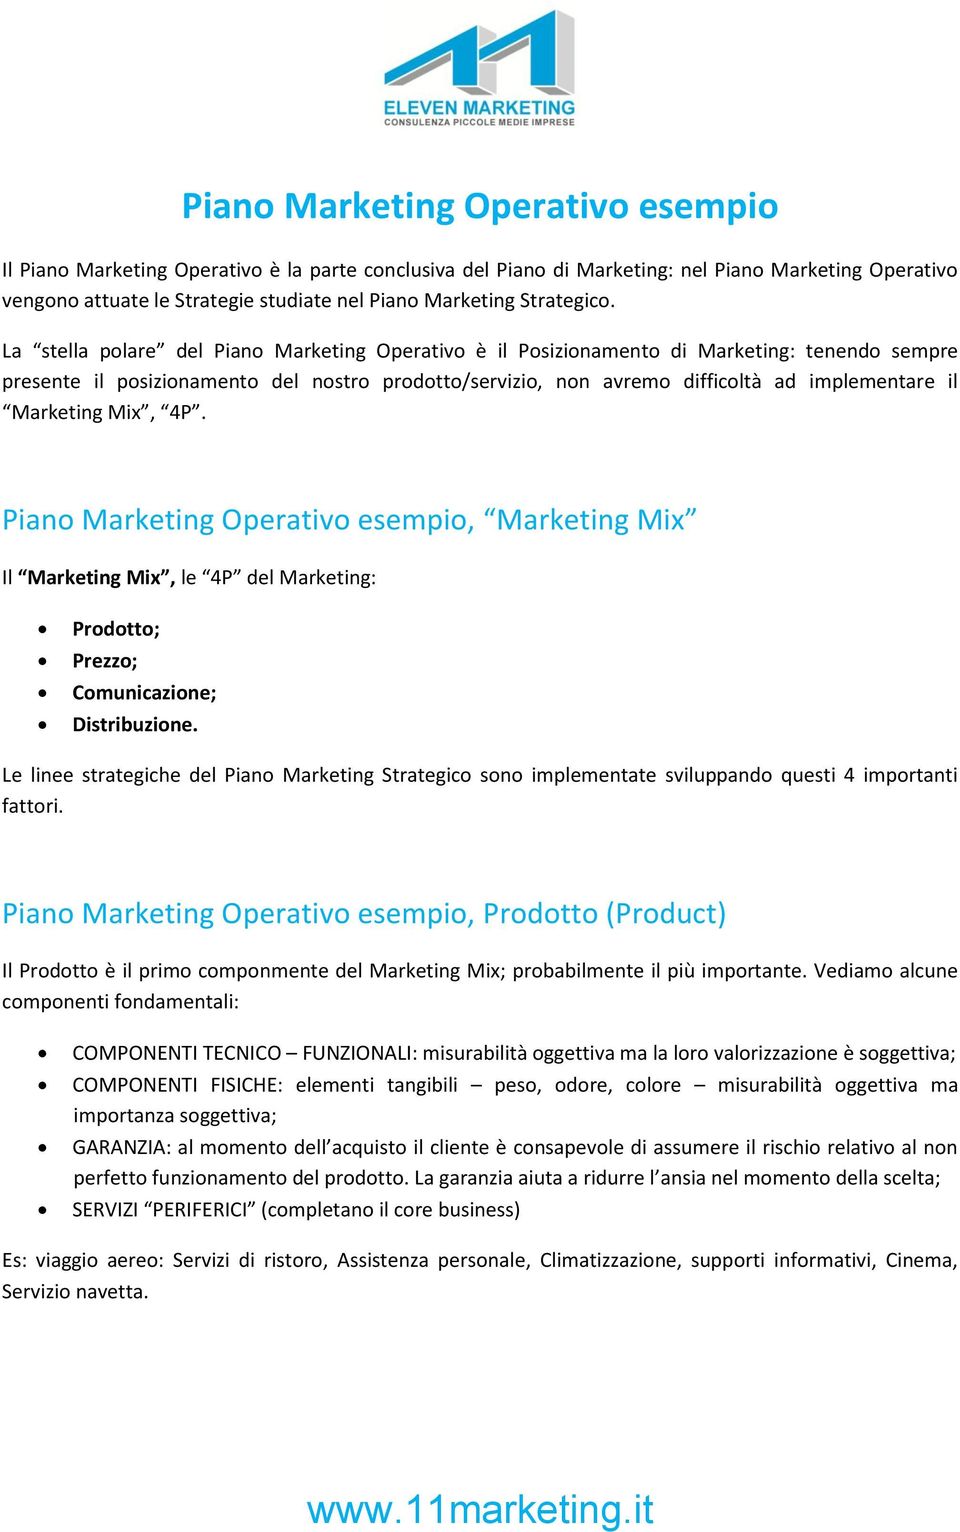 La stella polare del Piano Marketing Operativo è il Posizionamento di Marketing: tenendo sempre presente il posizionamento del nostro prodotto/servizio, non avremo difficoltà ad implementare il